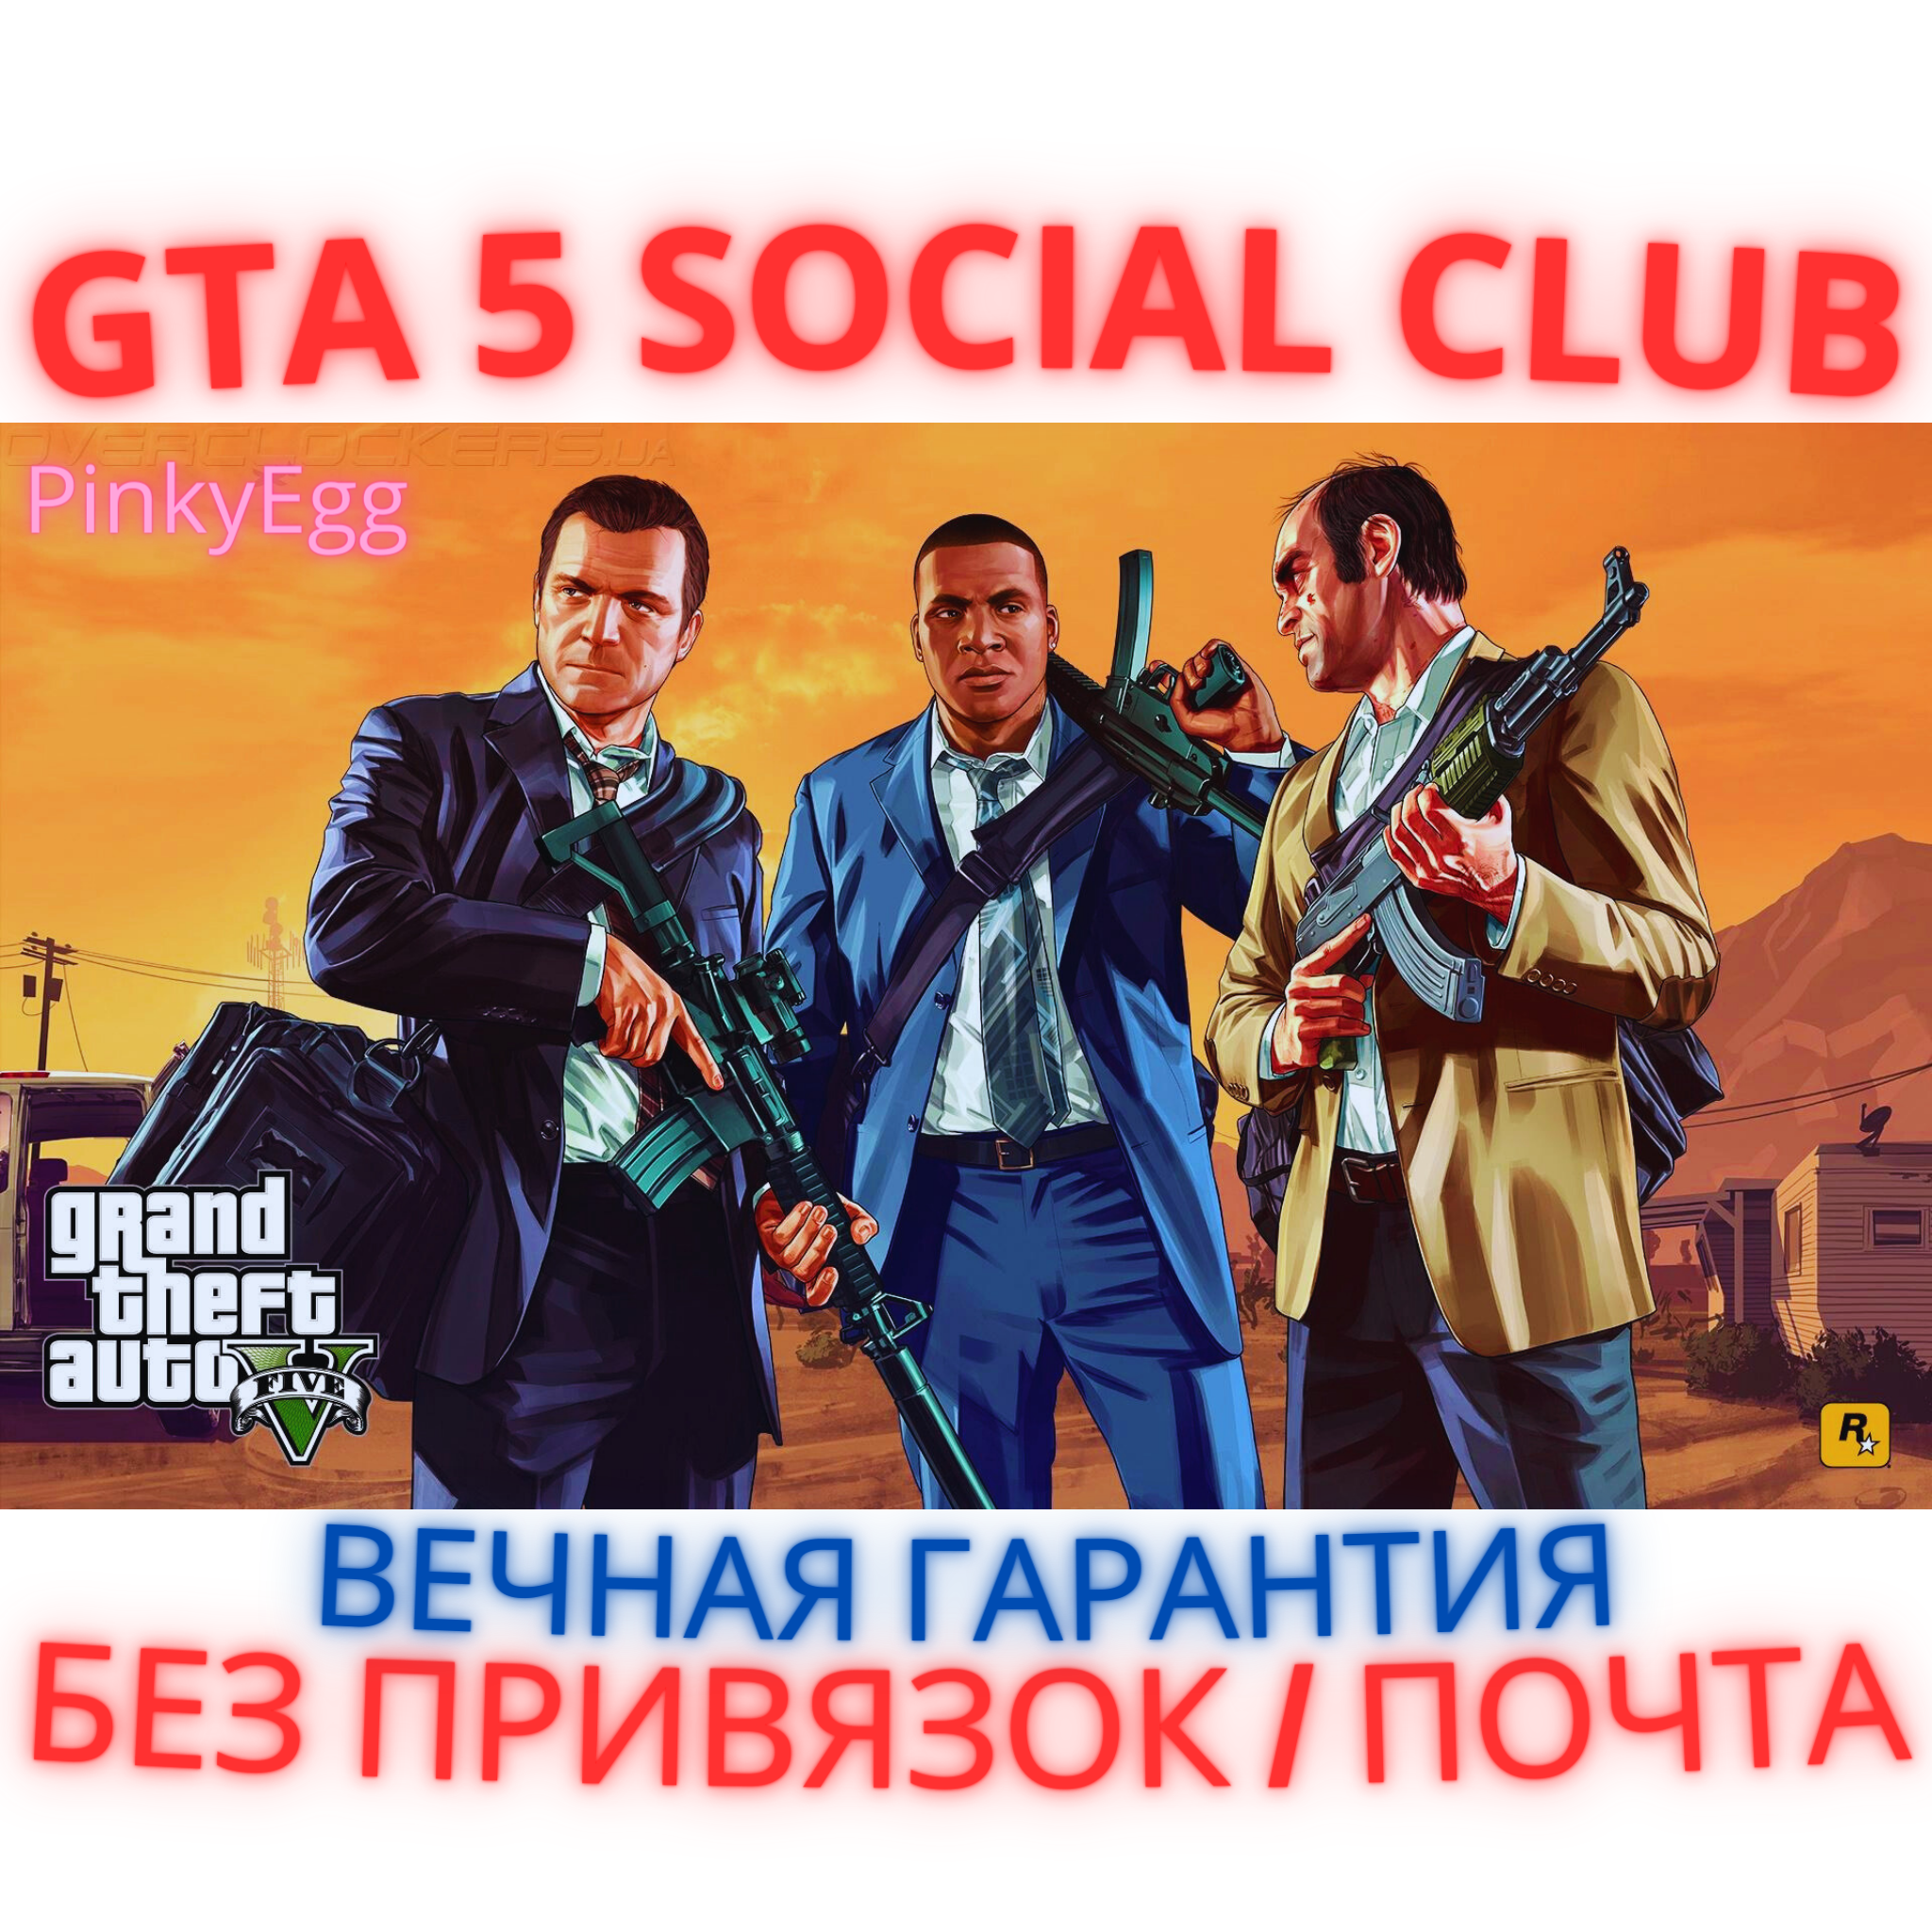 аккаунт gta 5 social club почта